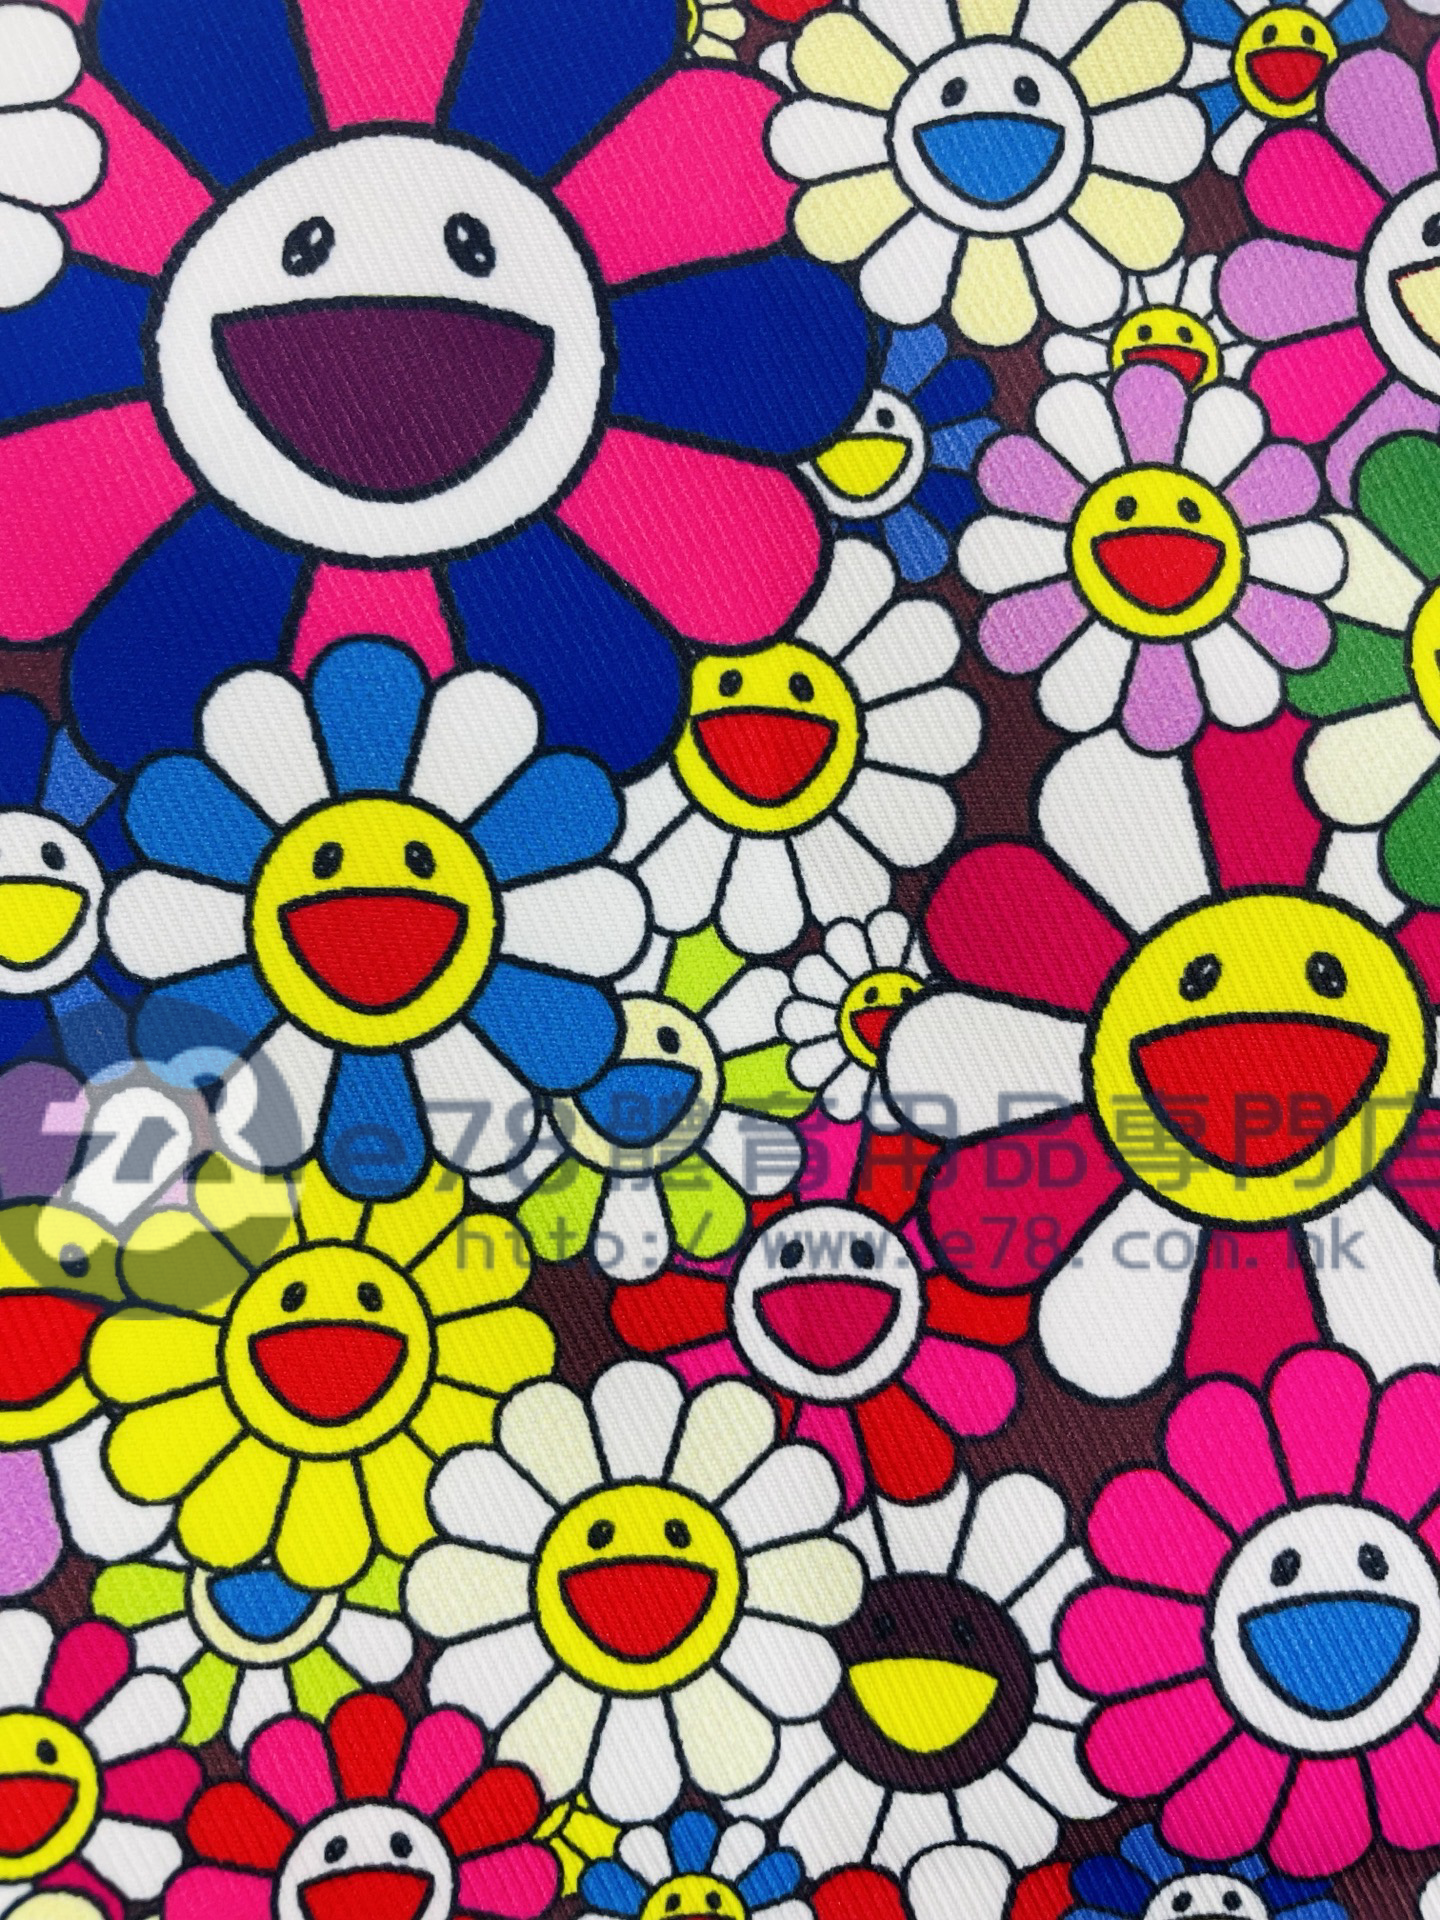 Takashi Murakami Flower Bag